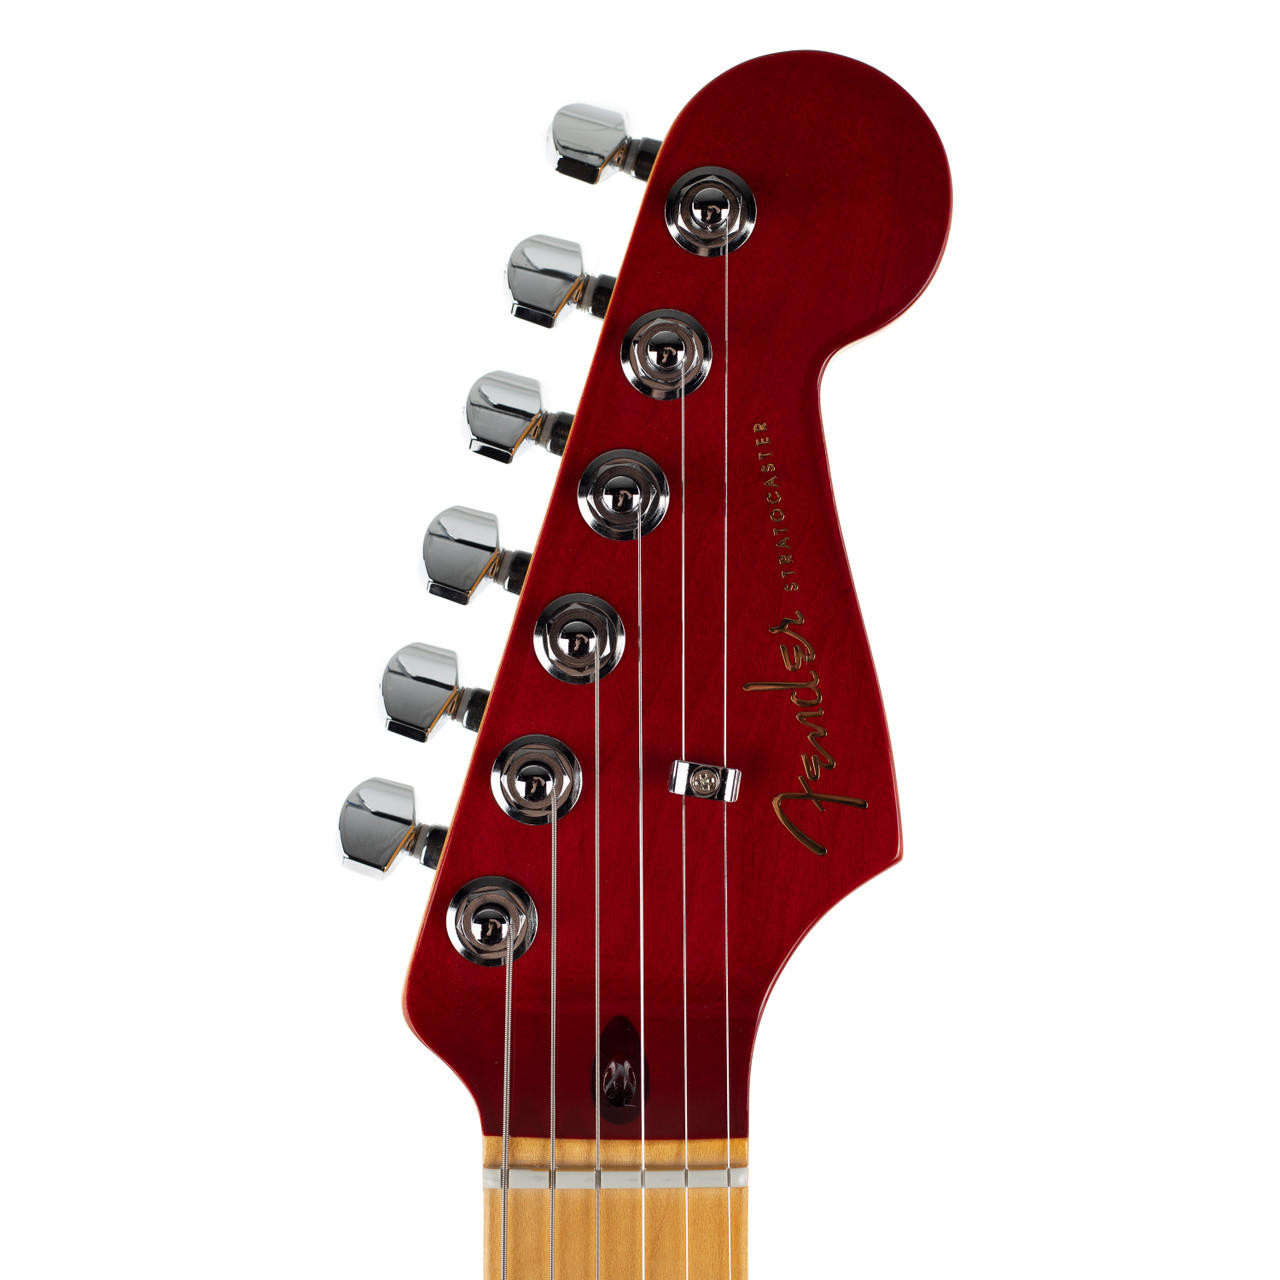 Fender Ultra Luxe Stratocaster Maple Fingerboard Plasma Red Burst -  Willcutt Guitars